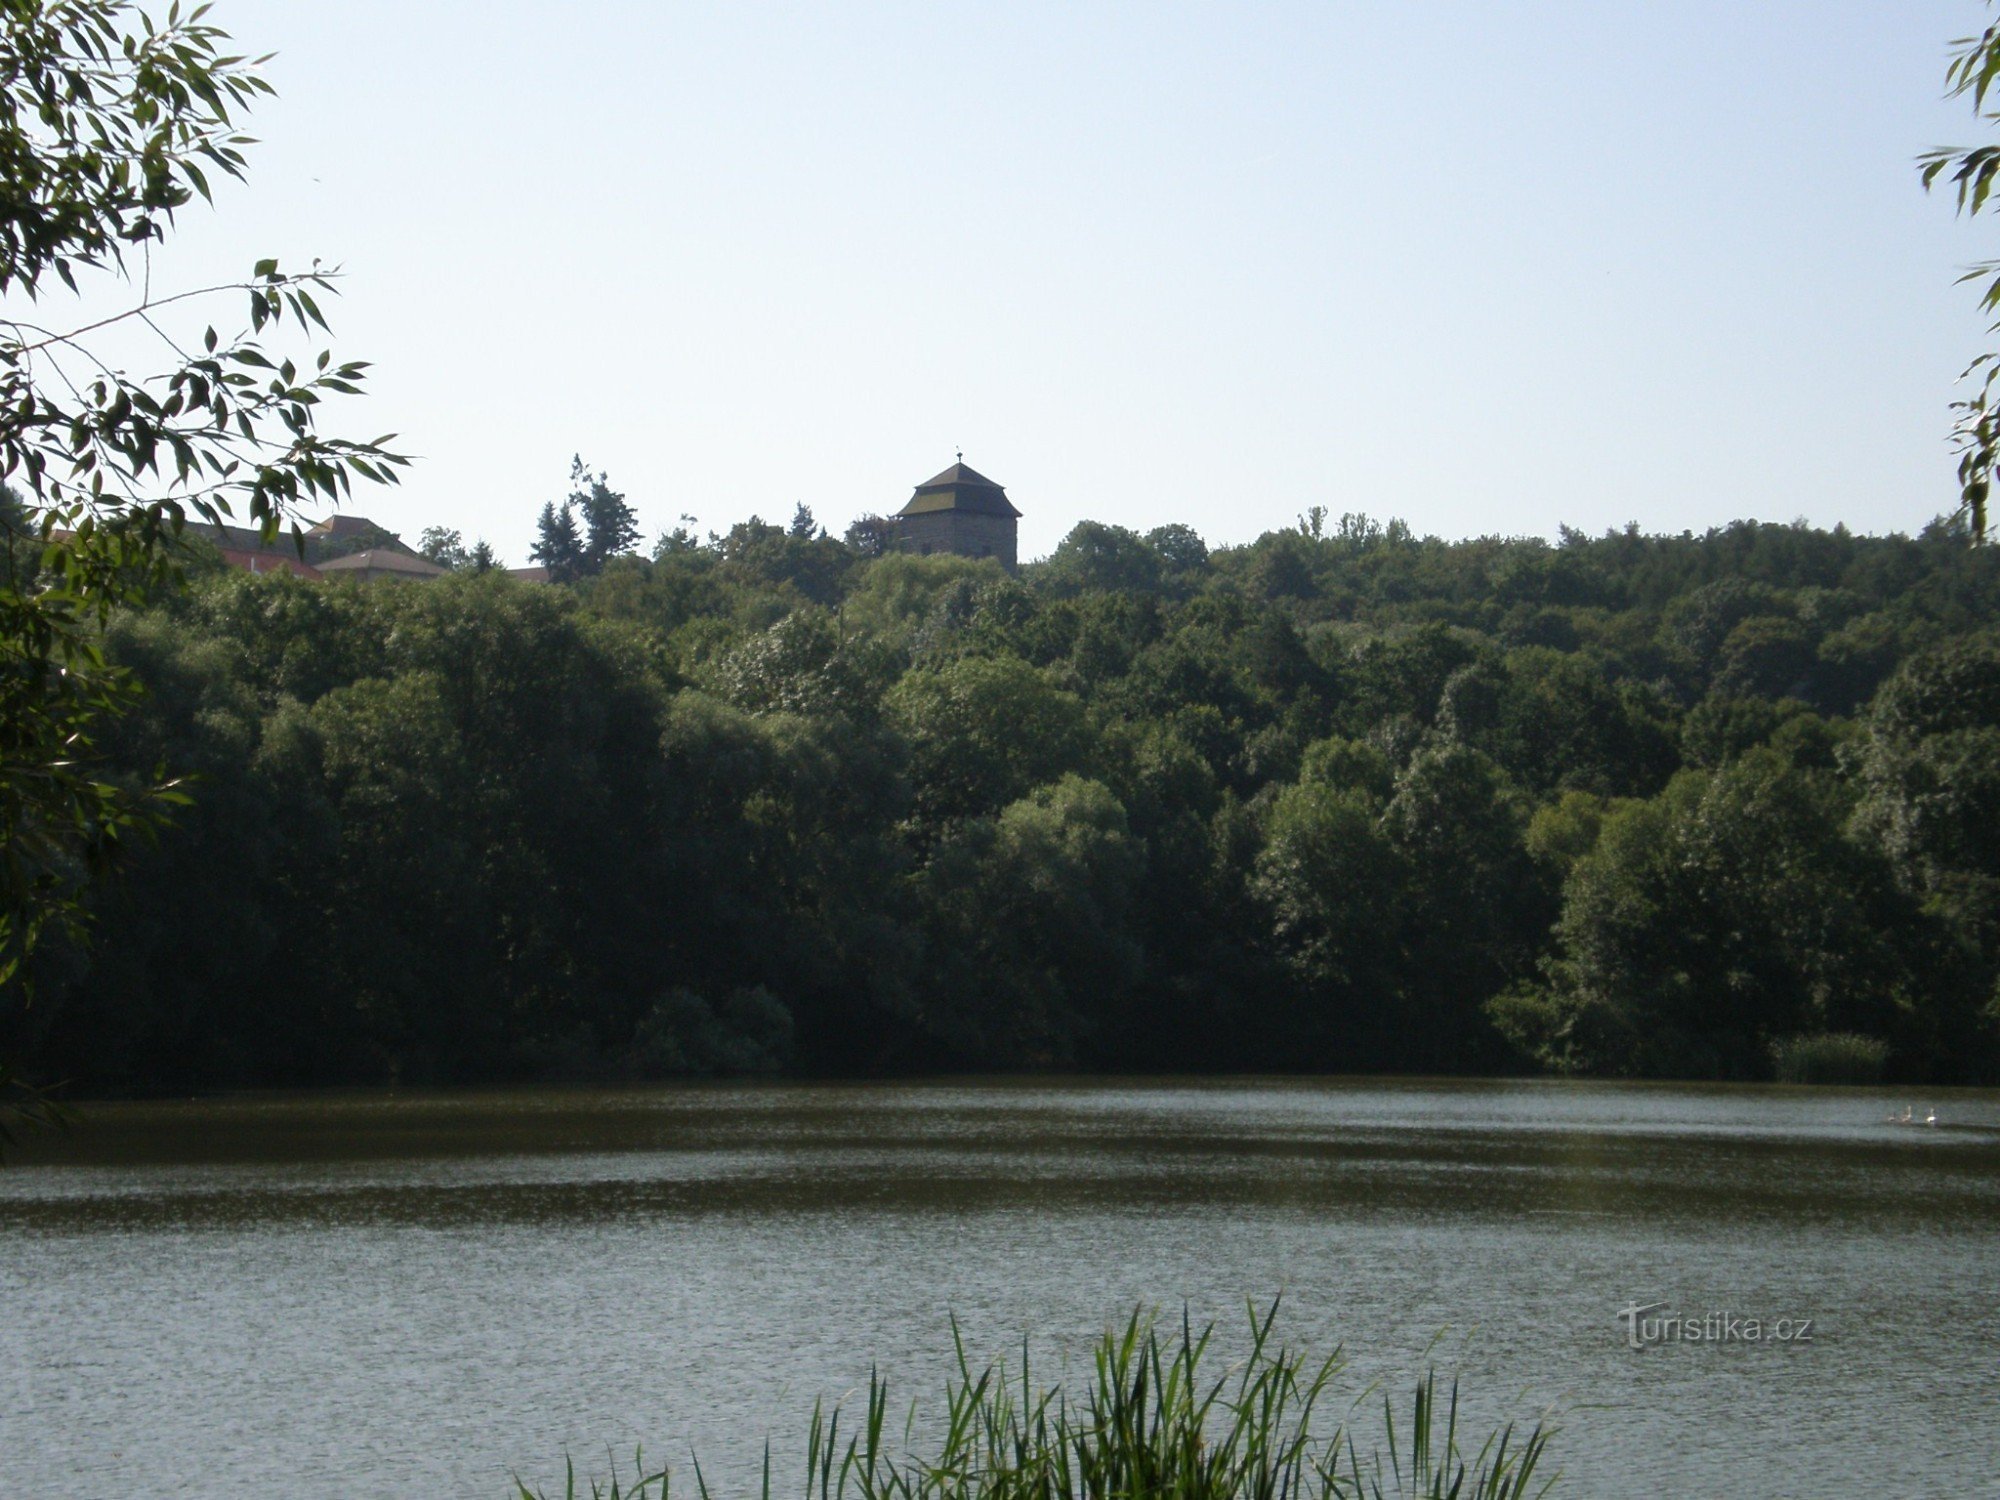 Vista de Tuchoraz a través de Mlýnský rybník